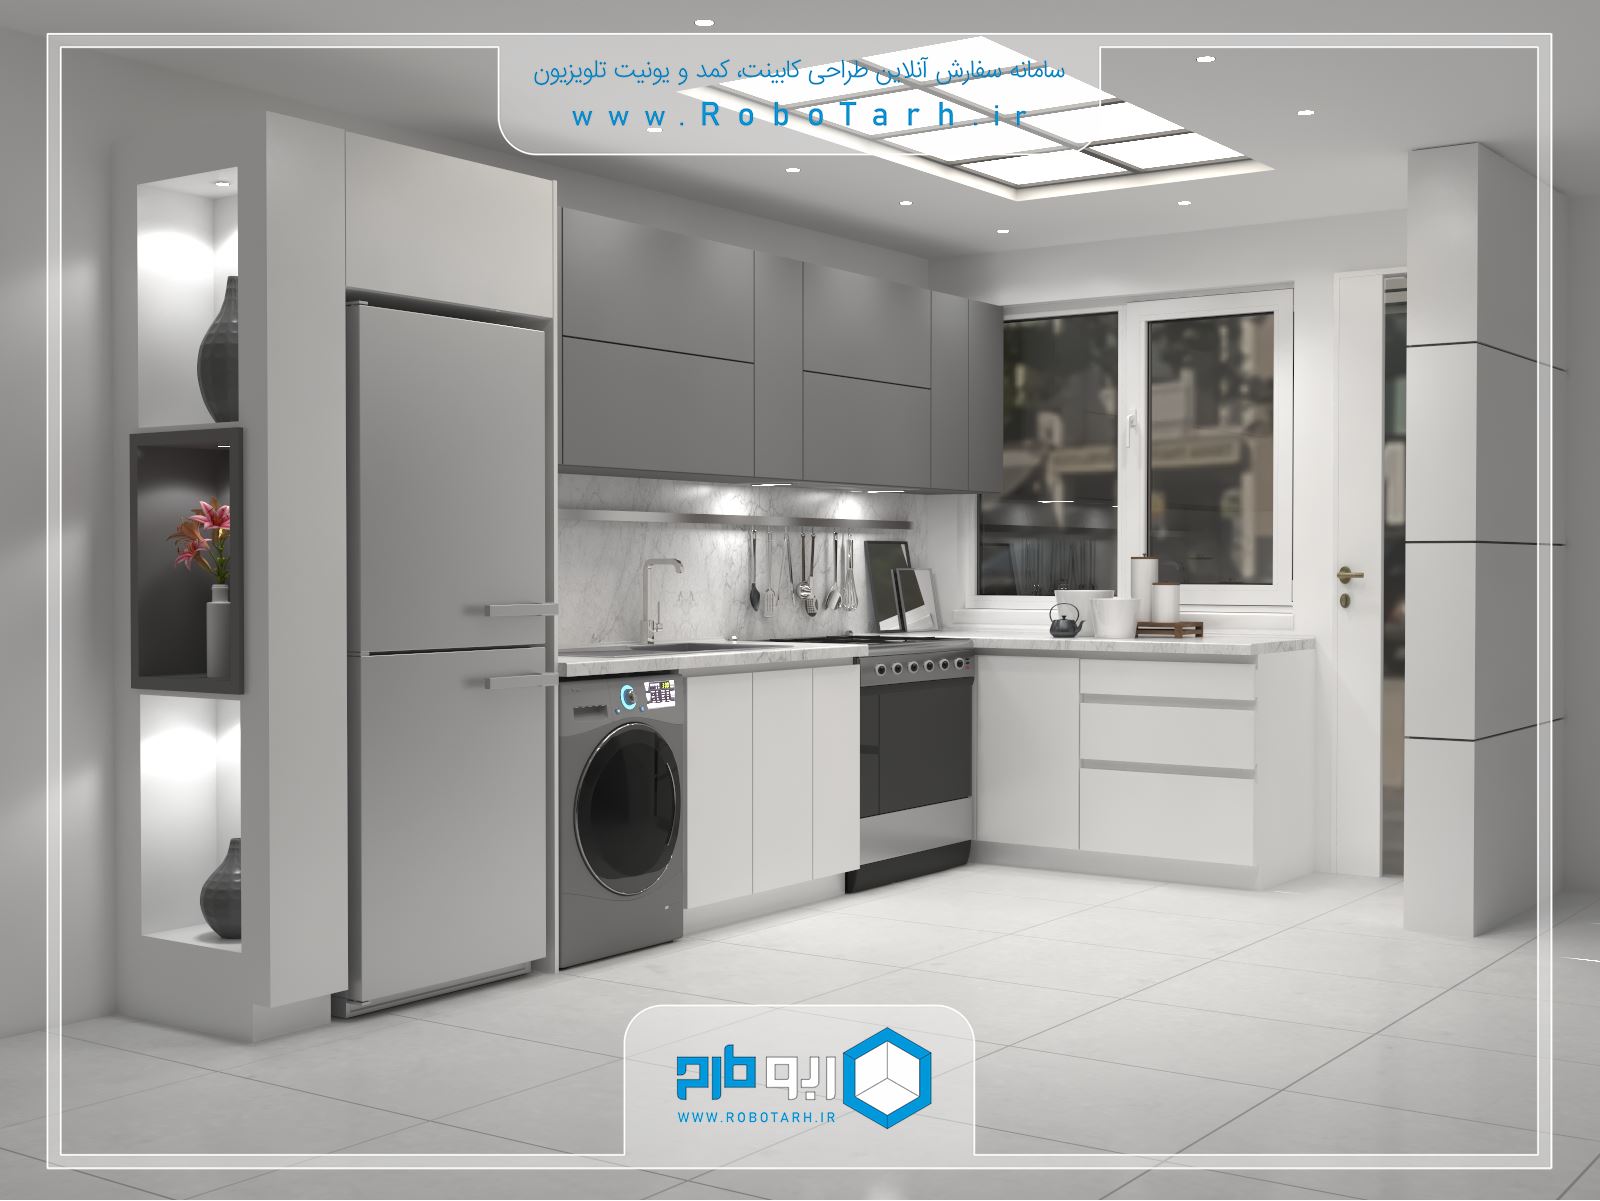 طراحی کابینت آشپزخانه کوچک به سبک مدرن با رنگ سفید و خاکستری - ربوطرح